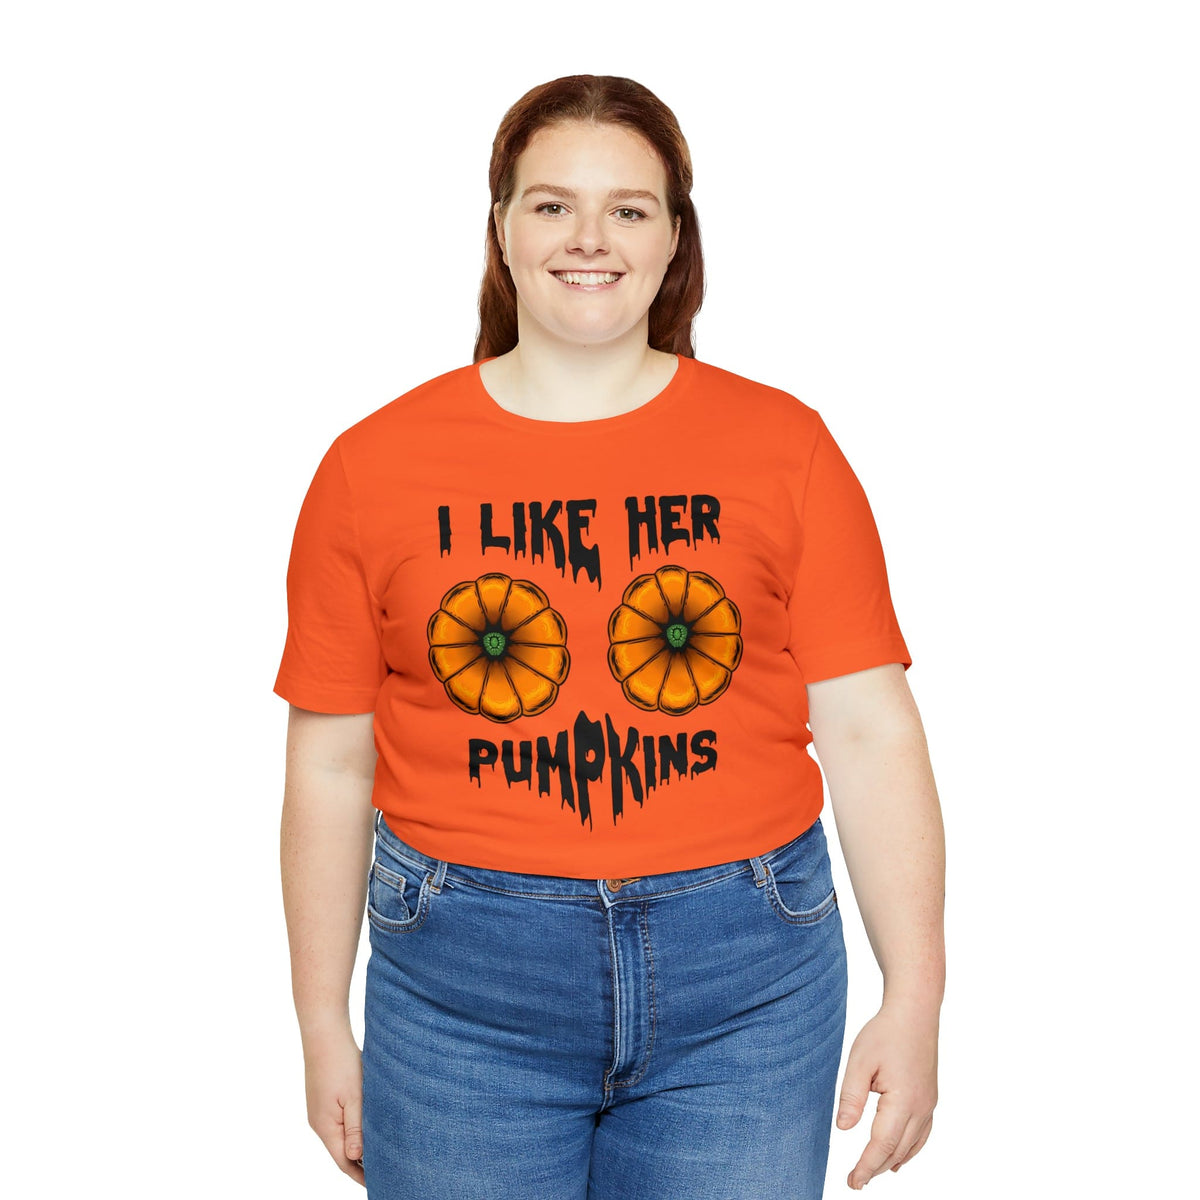 I Like Her pumpkins